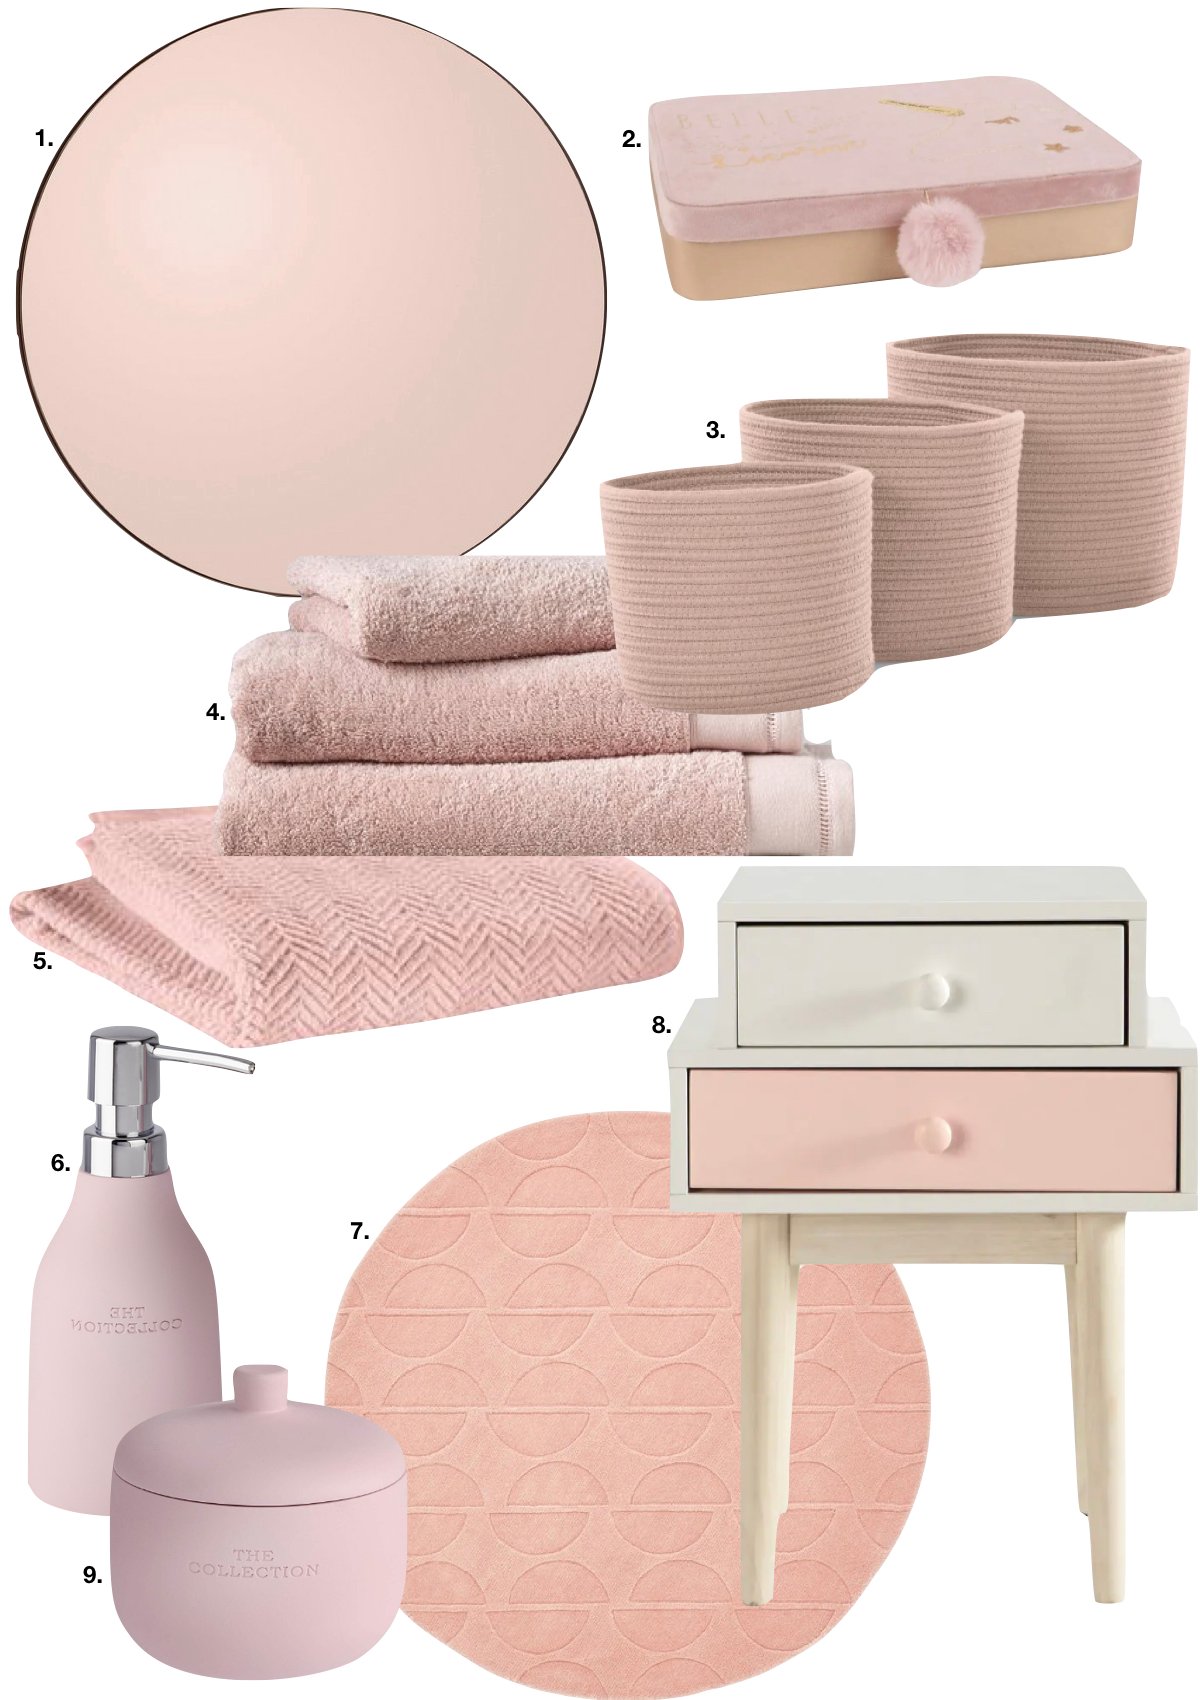 décoration accessoire salle de bain rose chic pastel - blog déco - clem around the corner